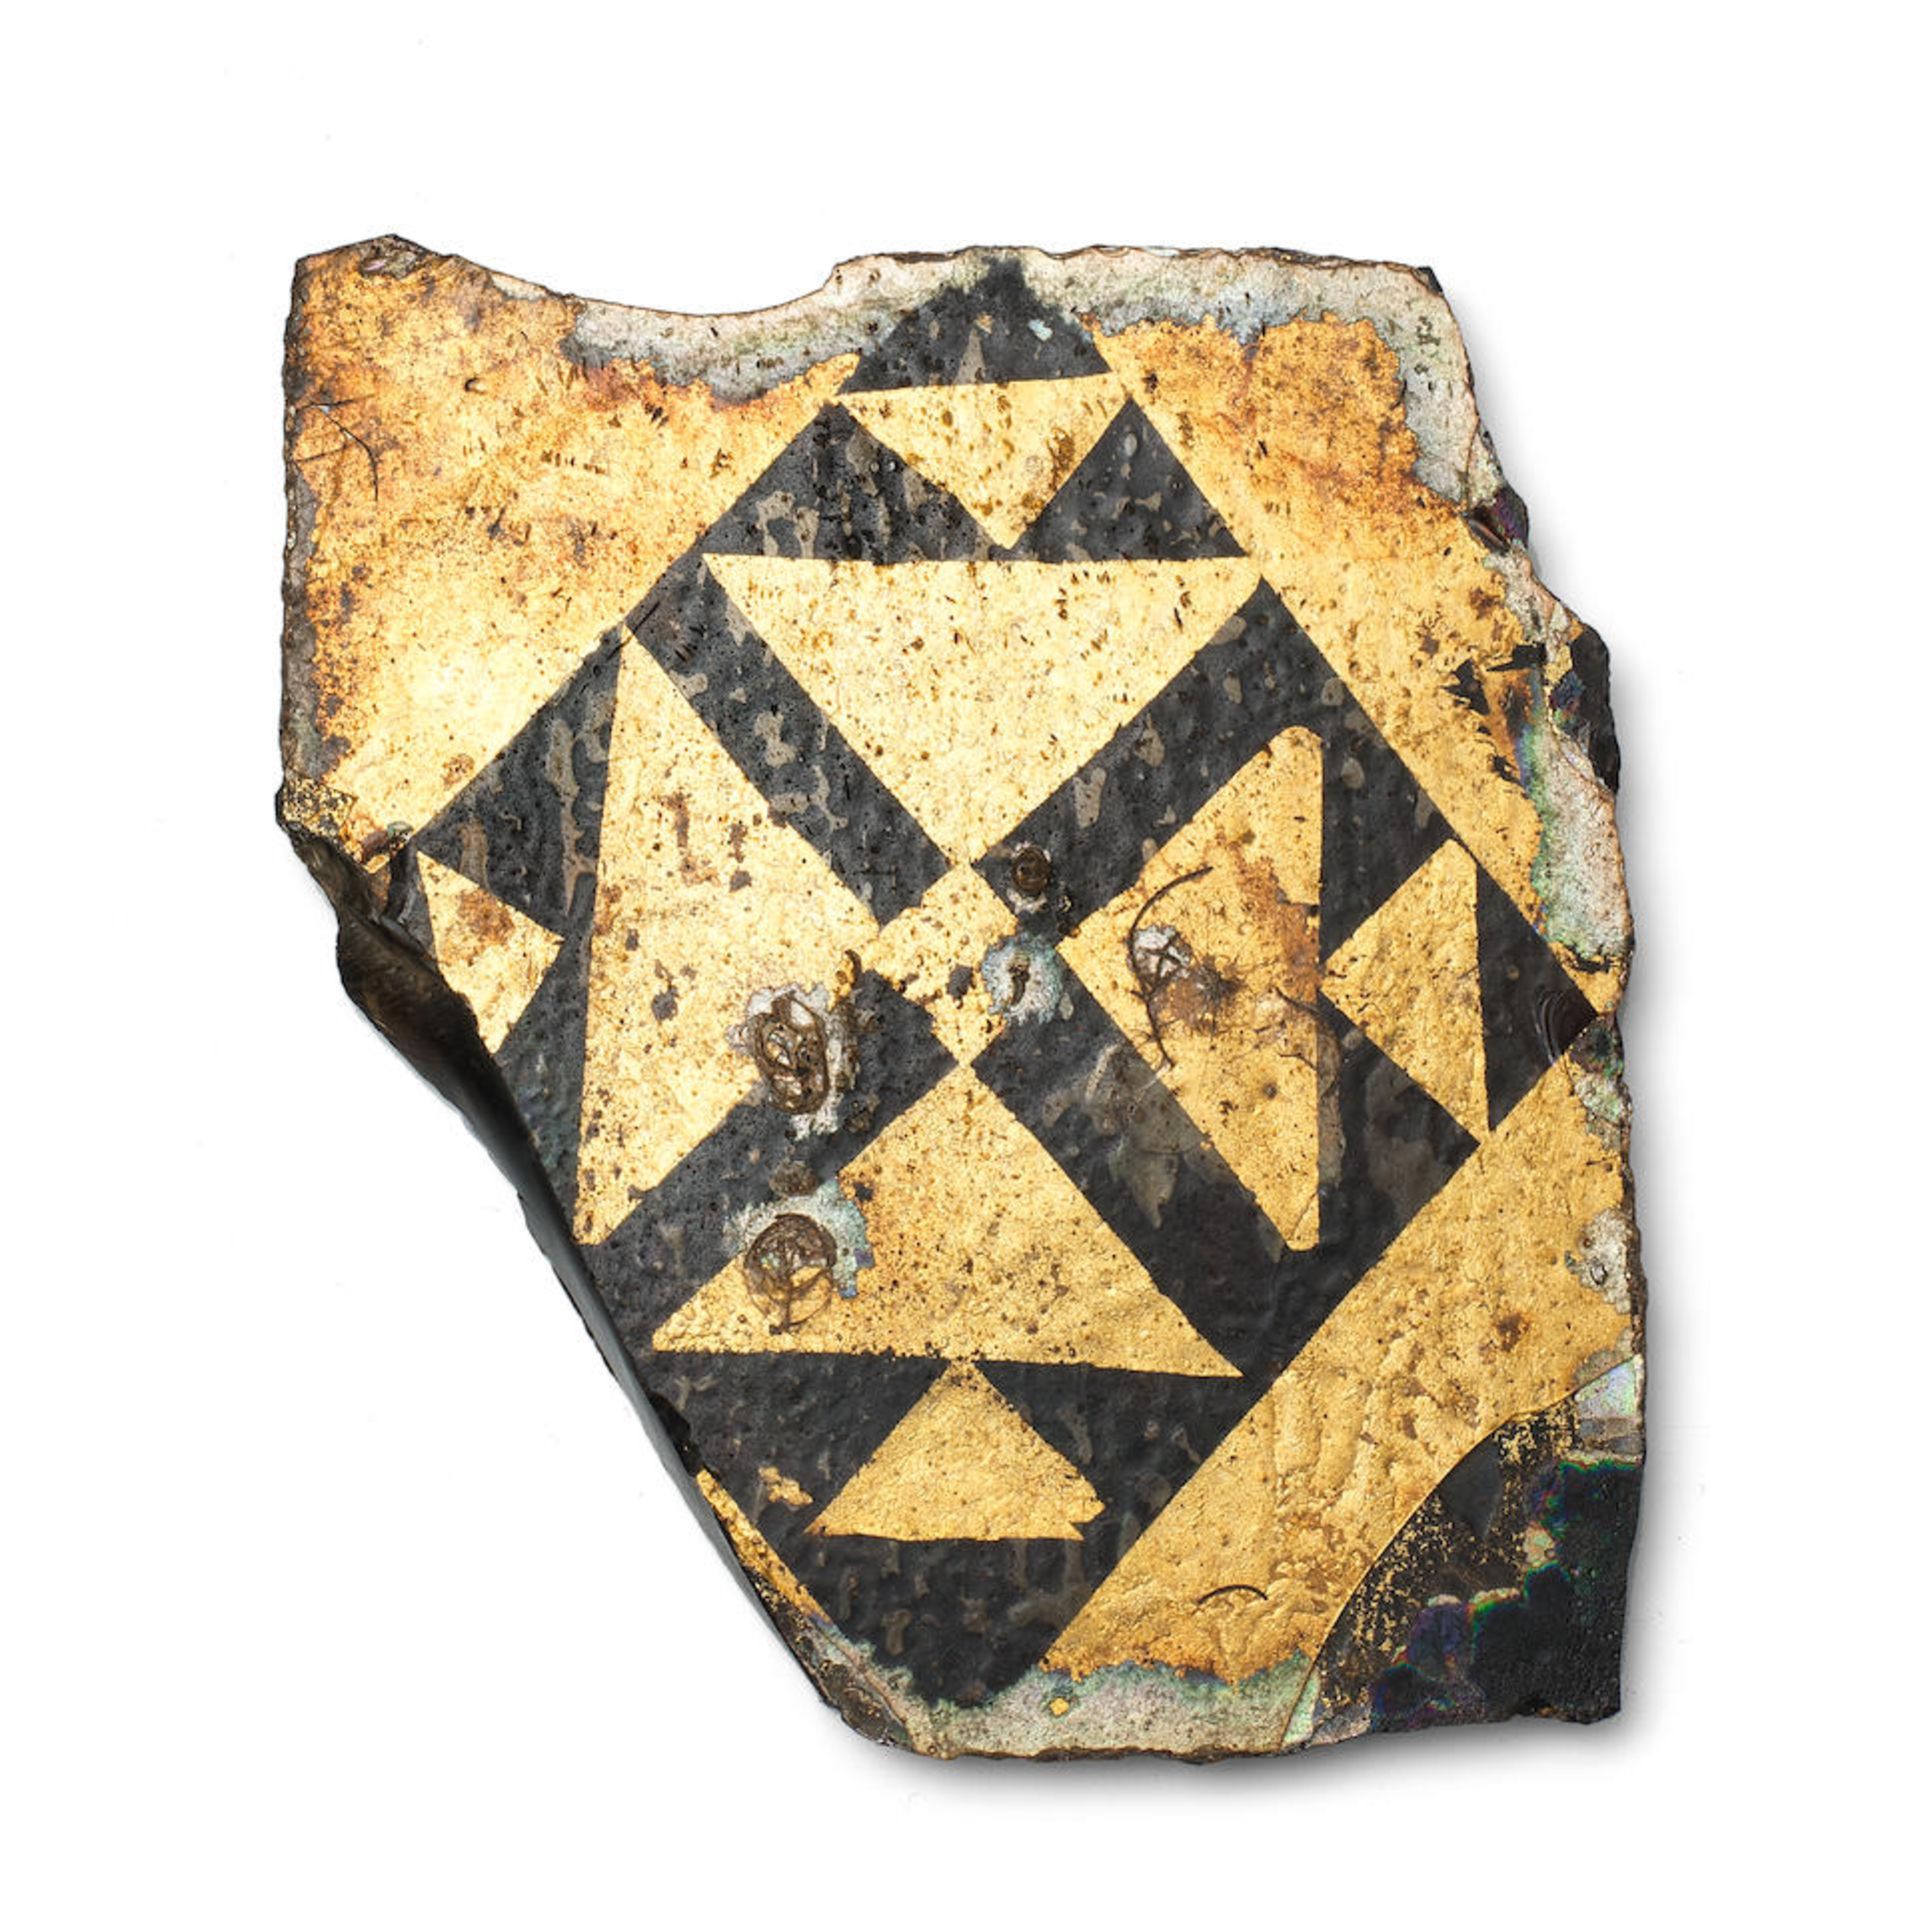 A Byzantine gold sandwich glass tile